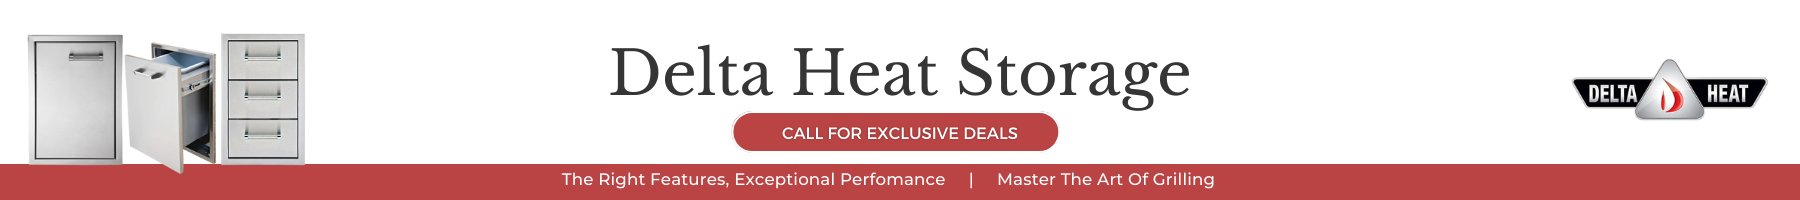 Delta Heat Storage